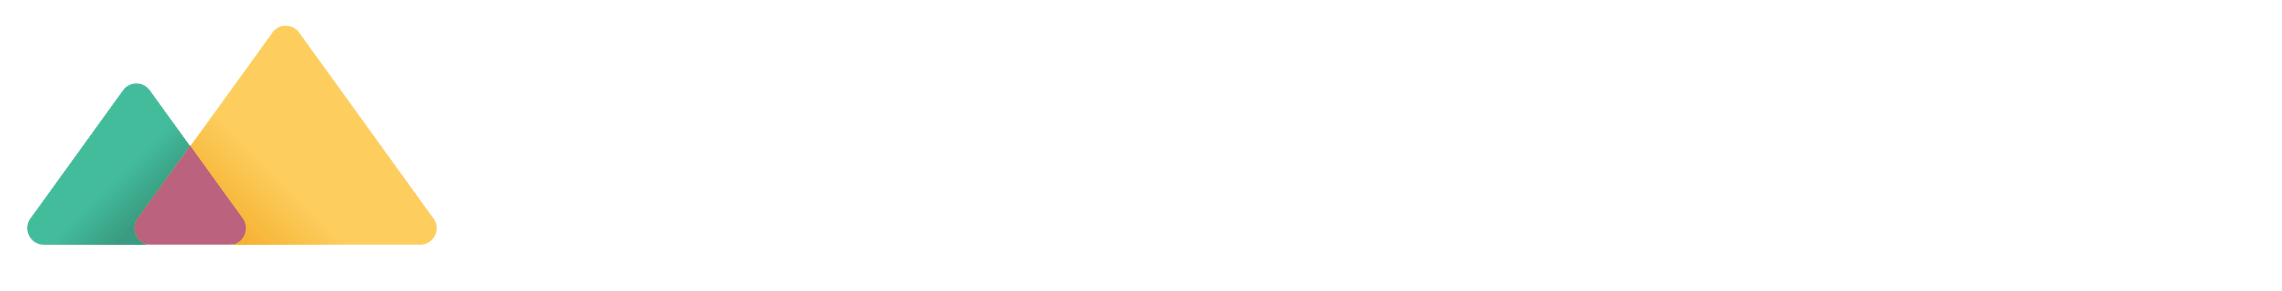 Satchel Pulse logo - rounded white